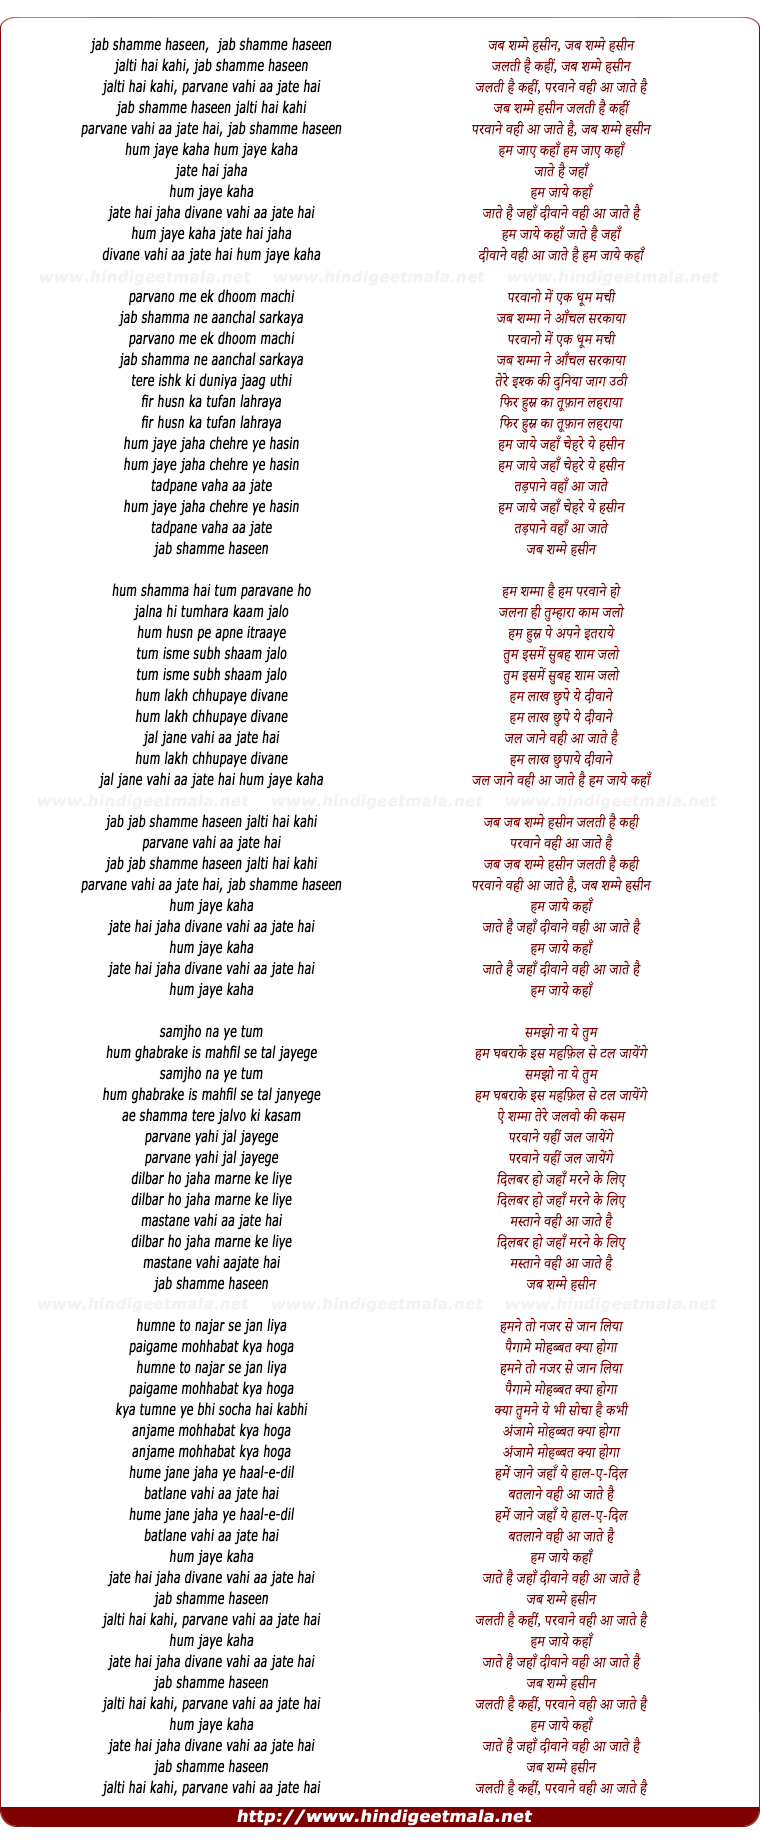 lyrics of song Jab Shame Haseen Jalti Hai